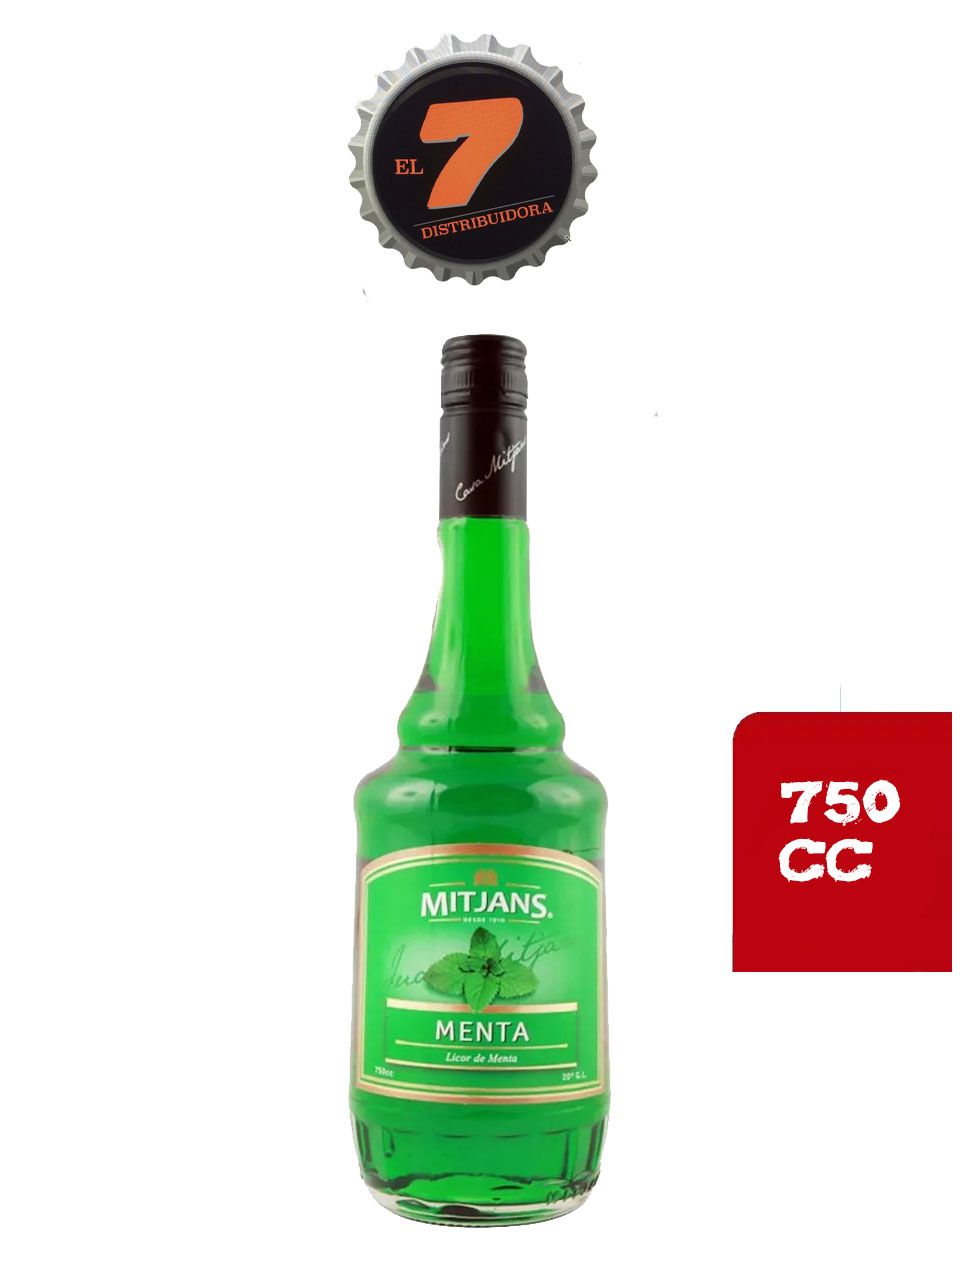 Mitjans Menta 750 CC